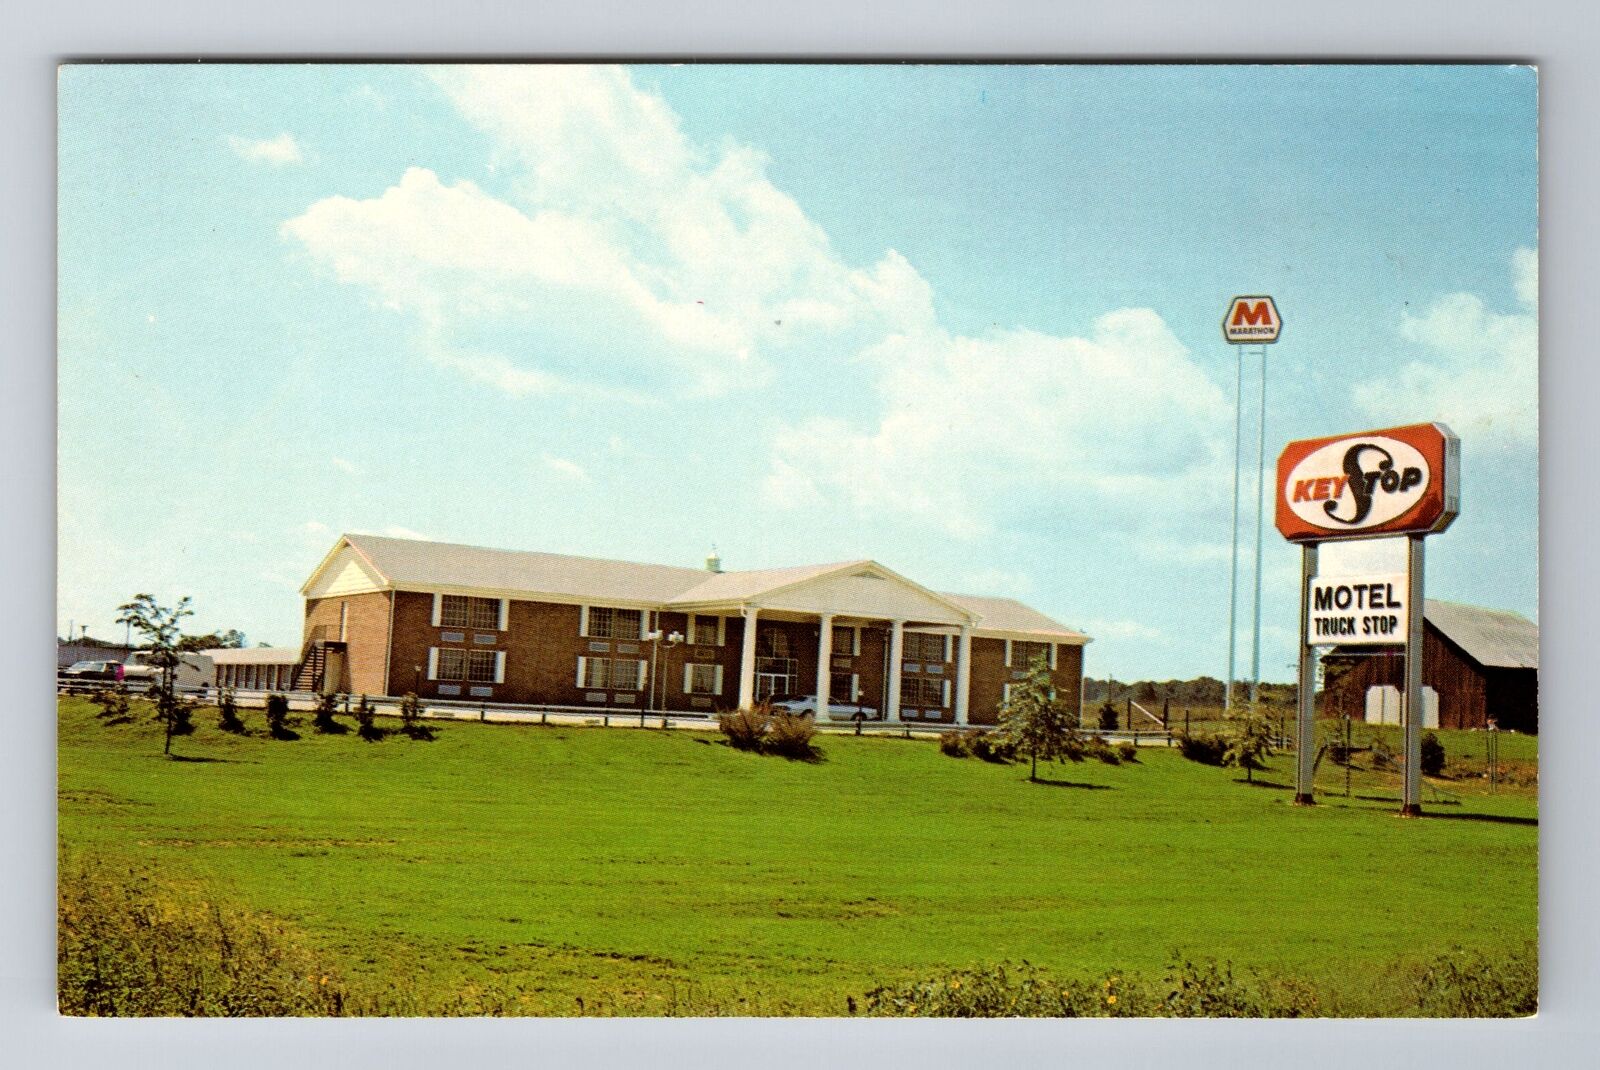 Franklin KY-Kentucky, KeyStop Motel & Restaurant Advertising, Vintage Postcard